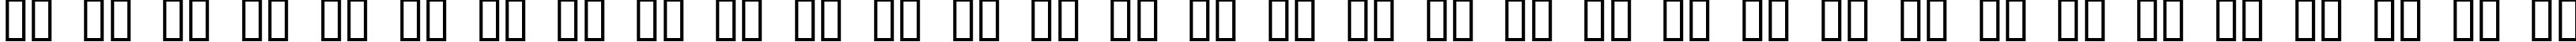 Пример написания русского алфавита шрифтом Ahnberg